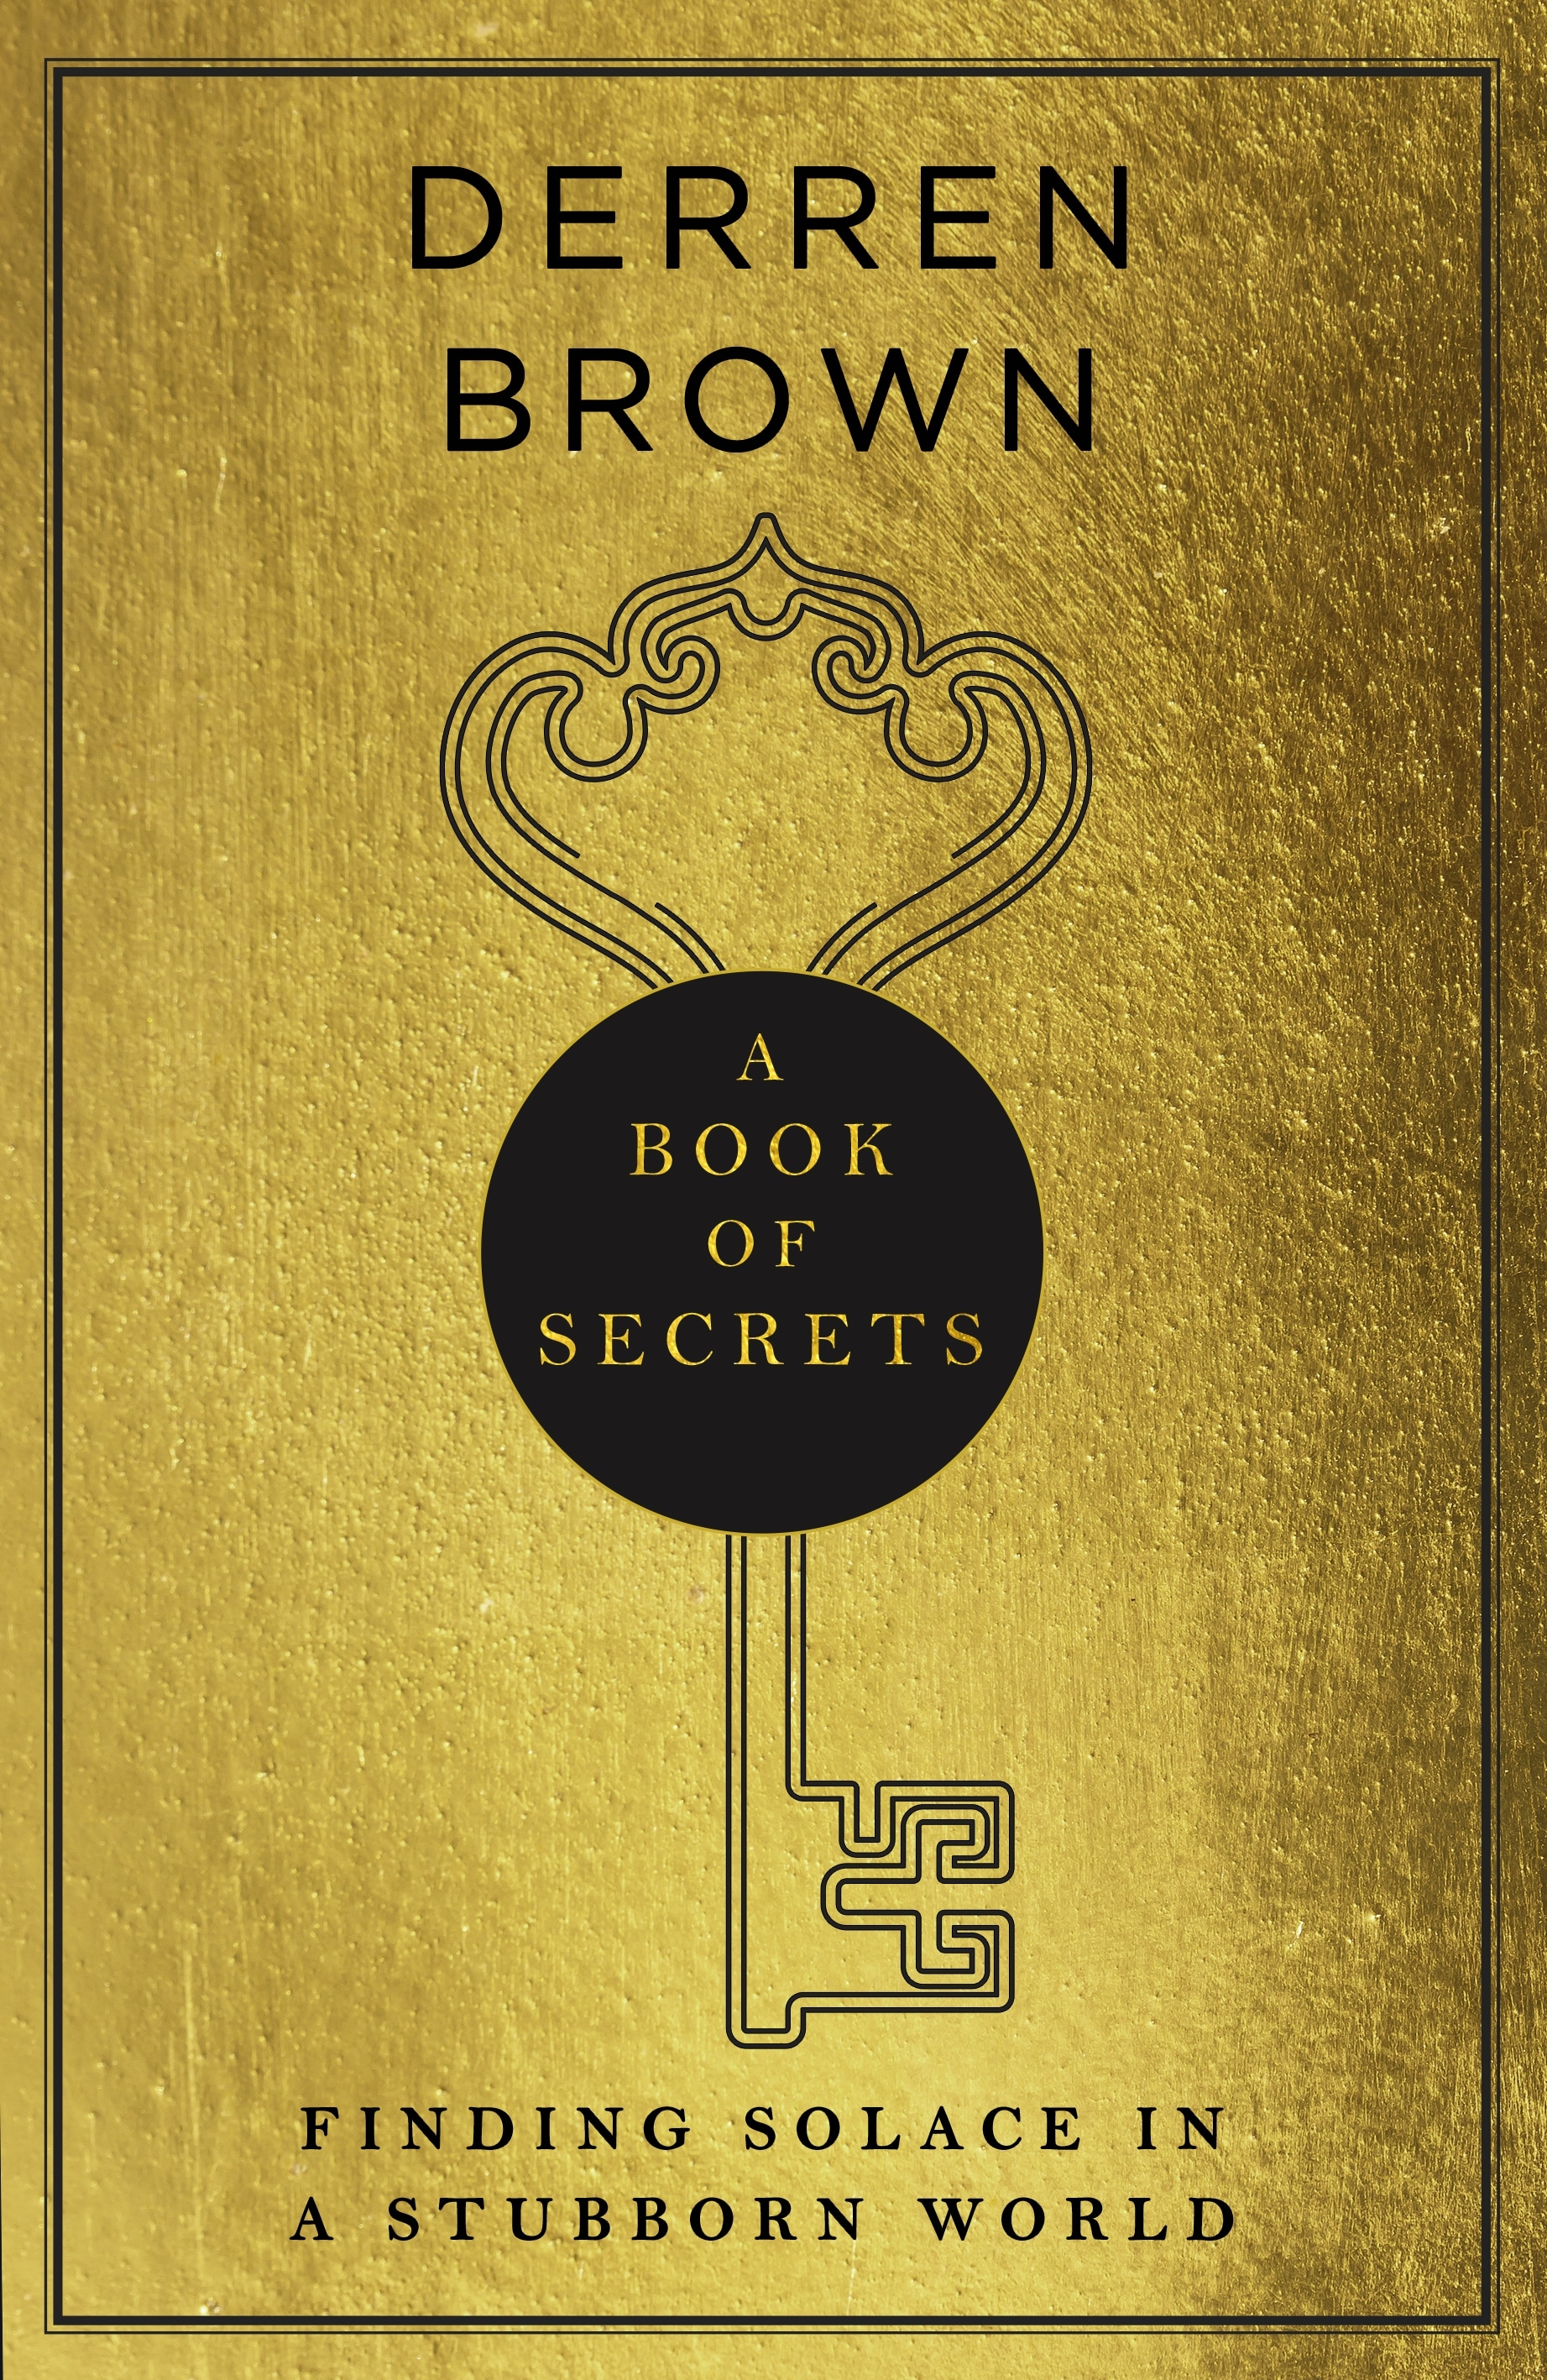 Book “A Book of Secrets” by Derren Brown — September 2, 2021